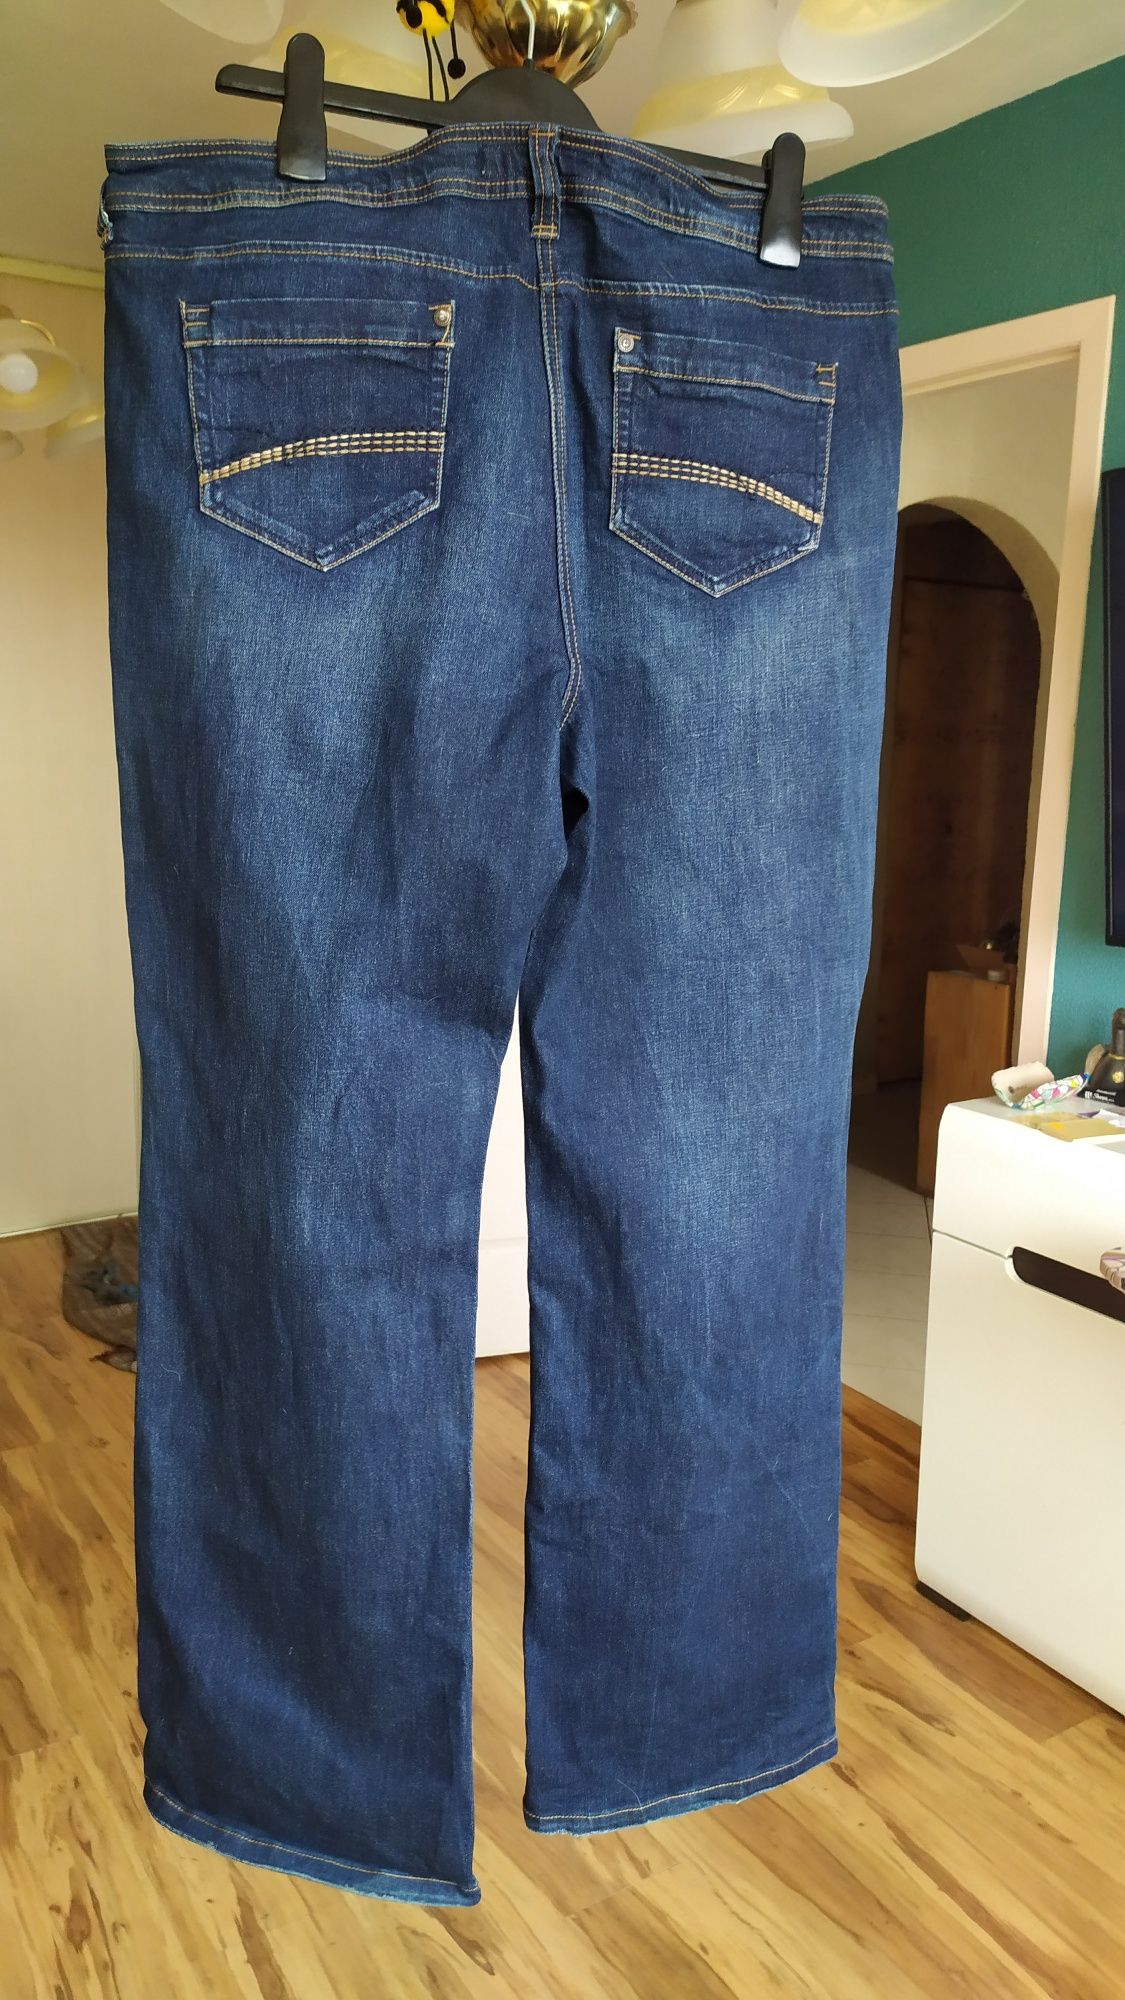 Spodnie damskie dżinsowe pas 100/ dł 115/biodra126